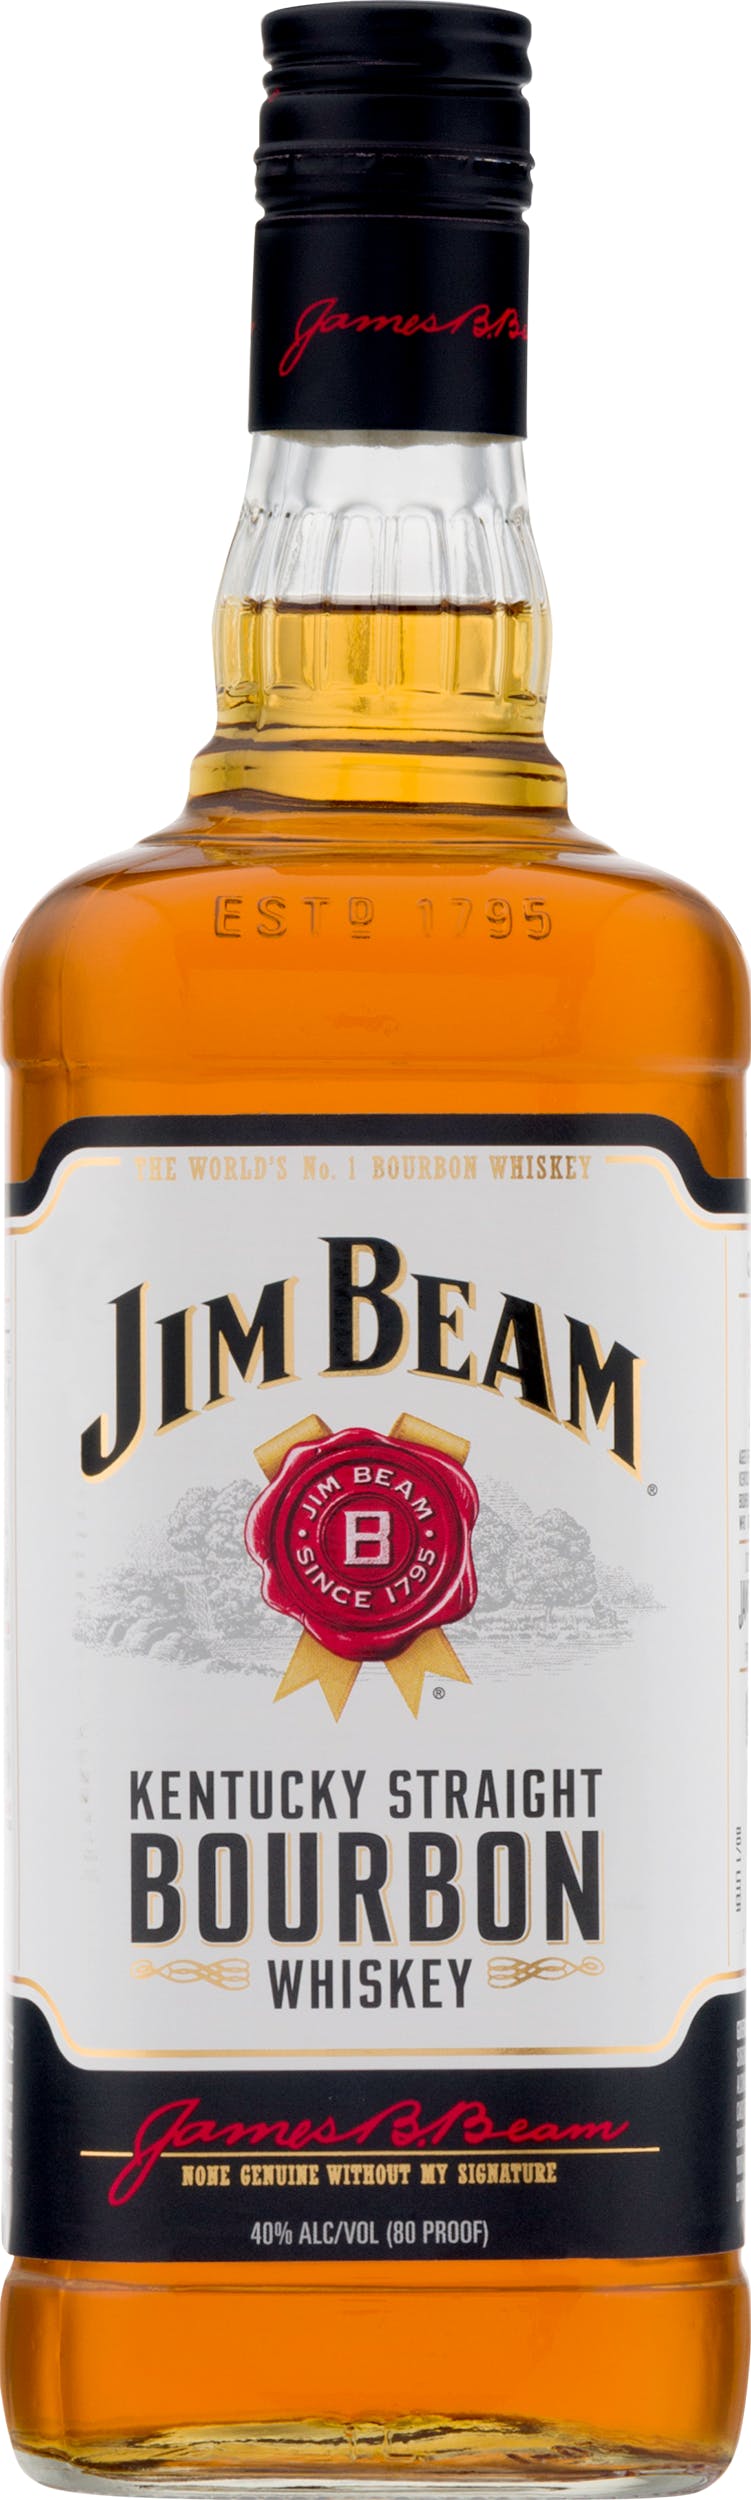 Jim Beam Kentucky Straight Bourbon 1L Wine - Liquor Argonaut Whiskey 